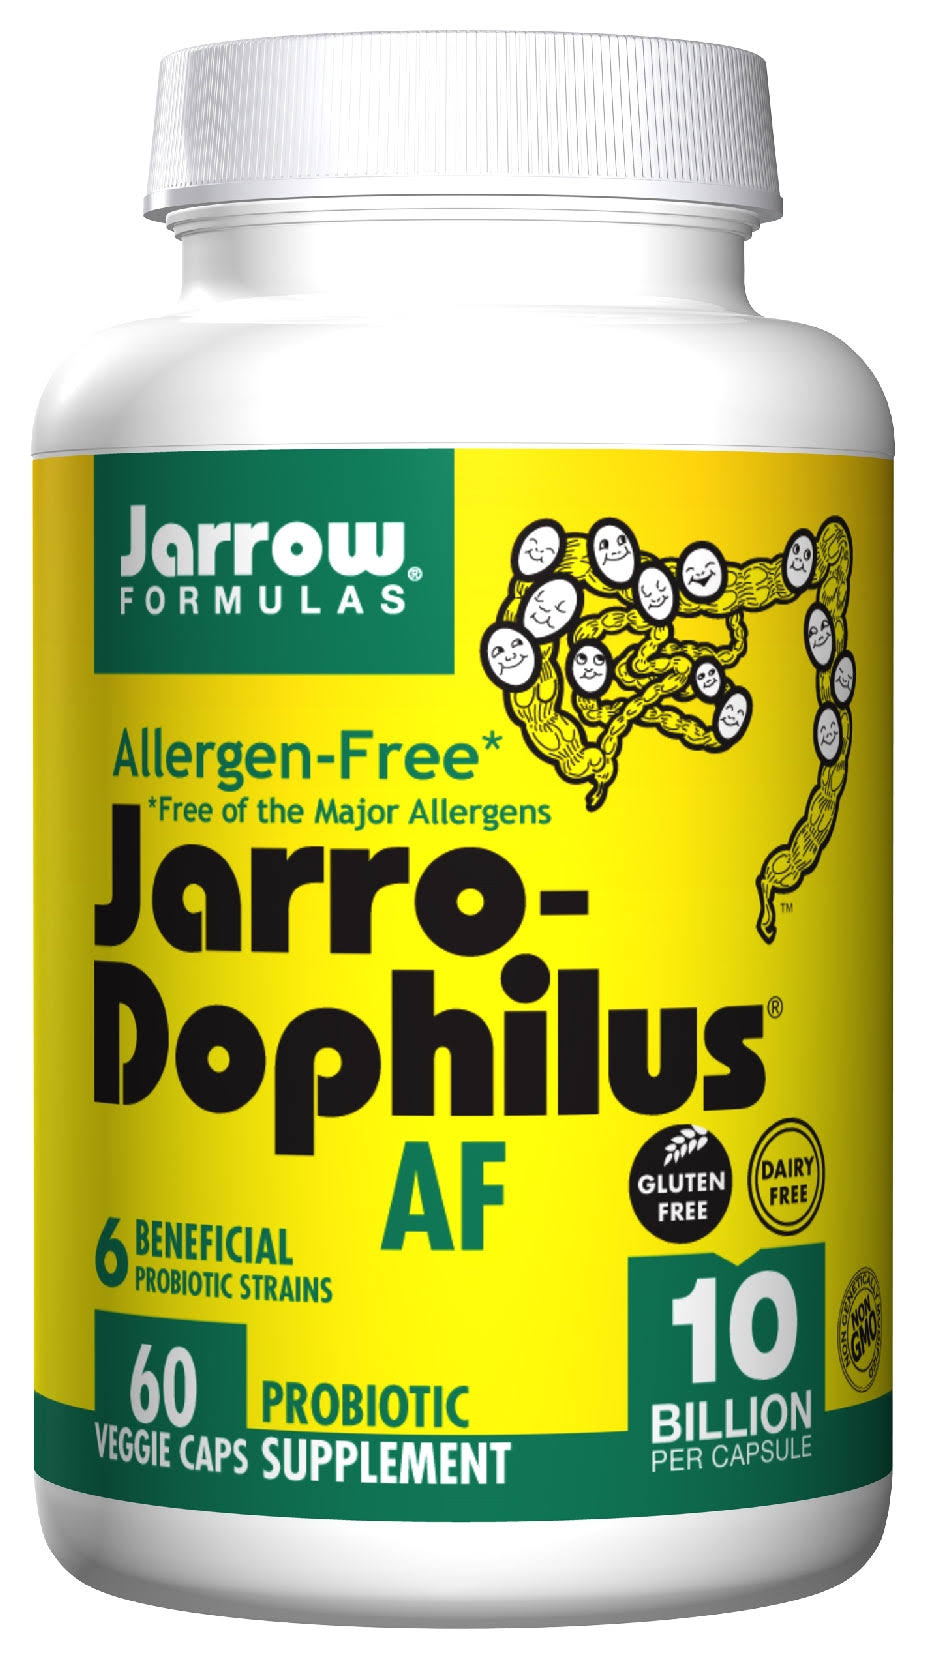 Jarrow Formulas Jarro-Dophilus Allergen-Free Probiotic Supplement - 60 Capsules